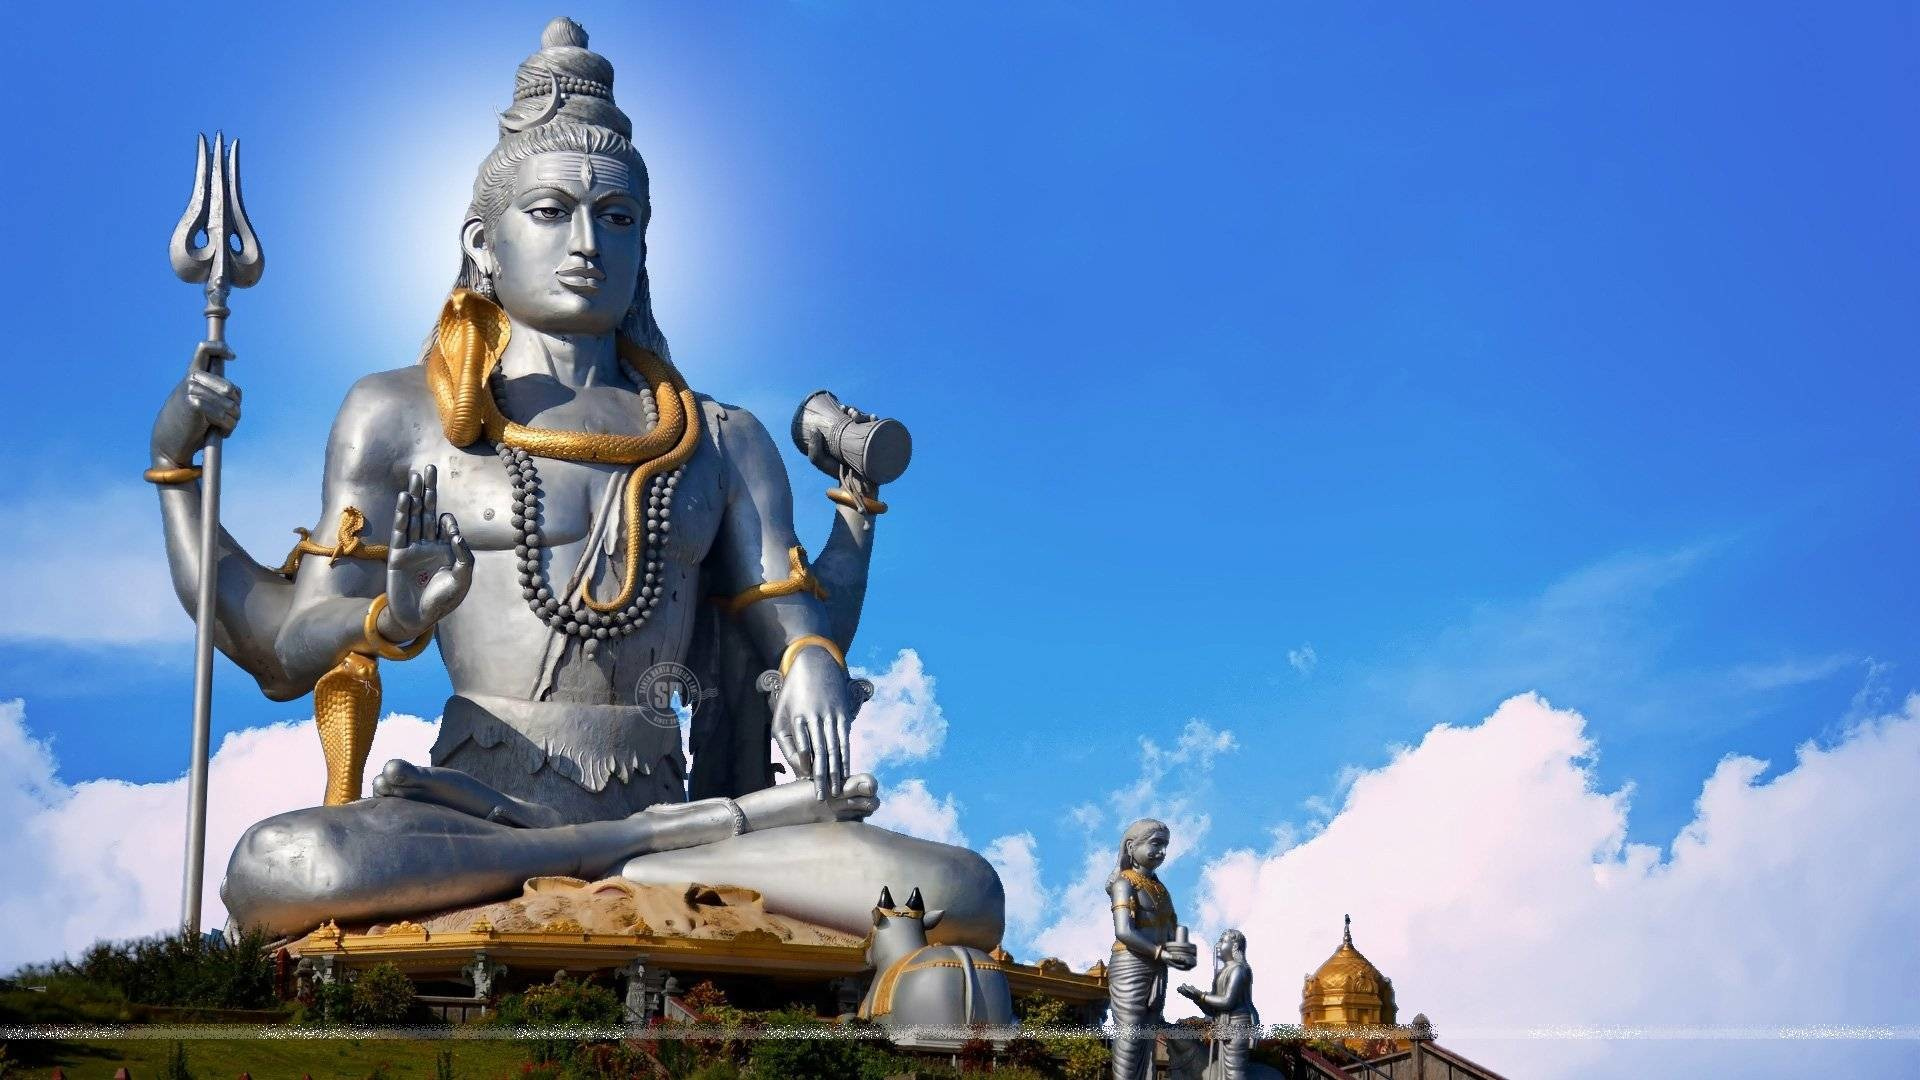 God Shiva - Hindu God